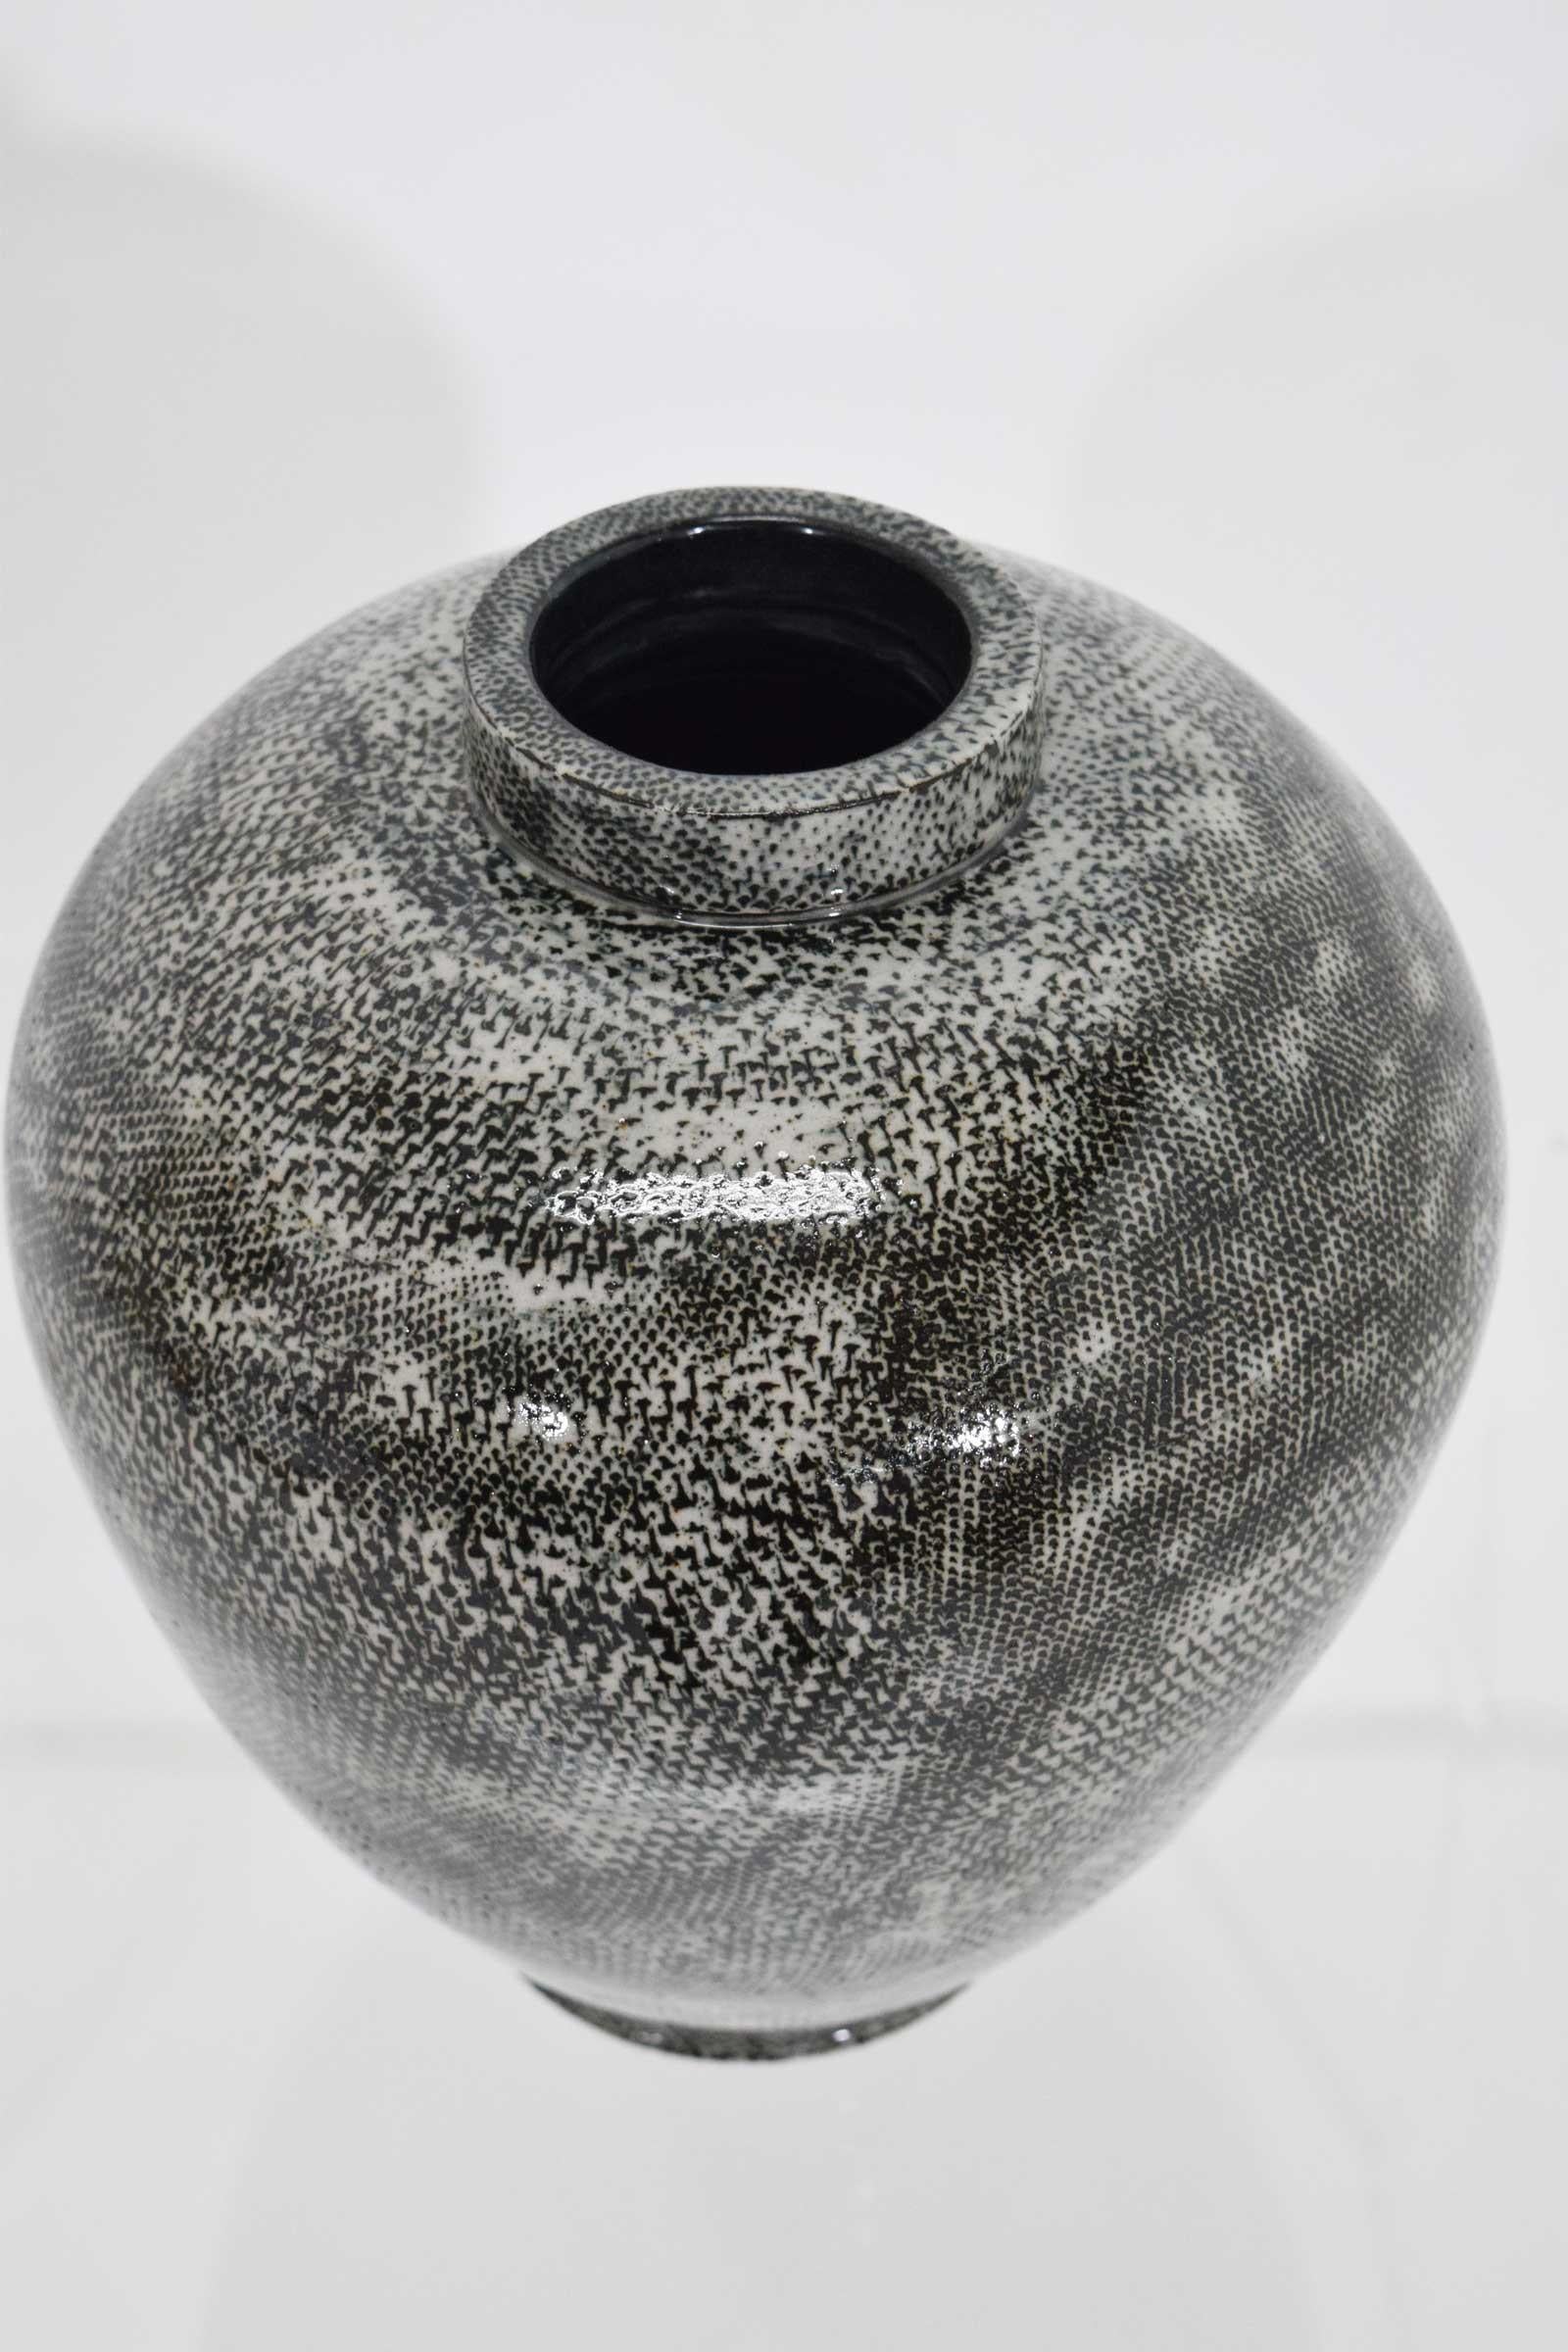 pottery vessels